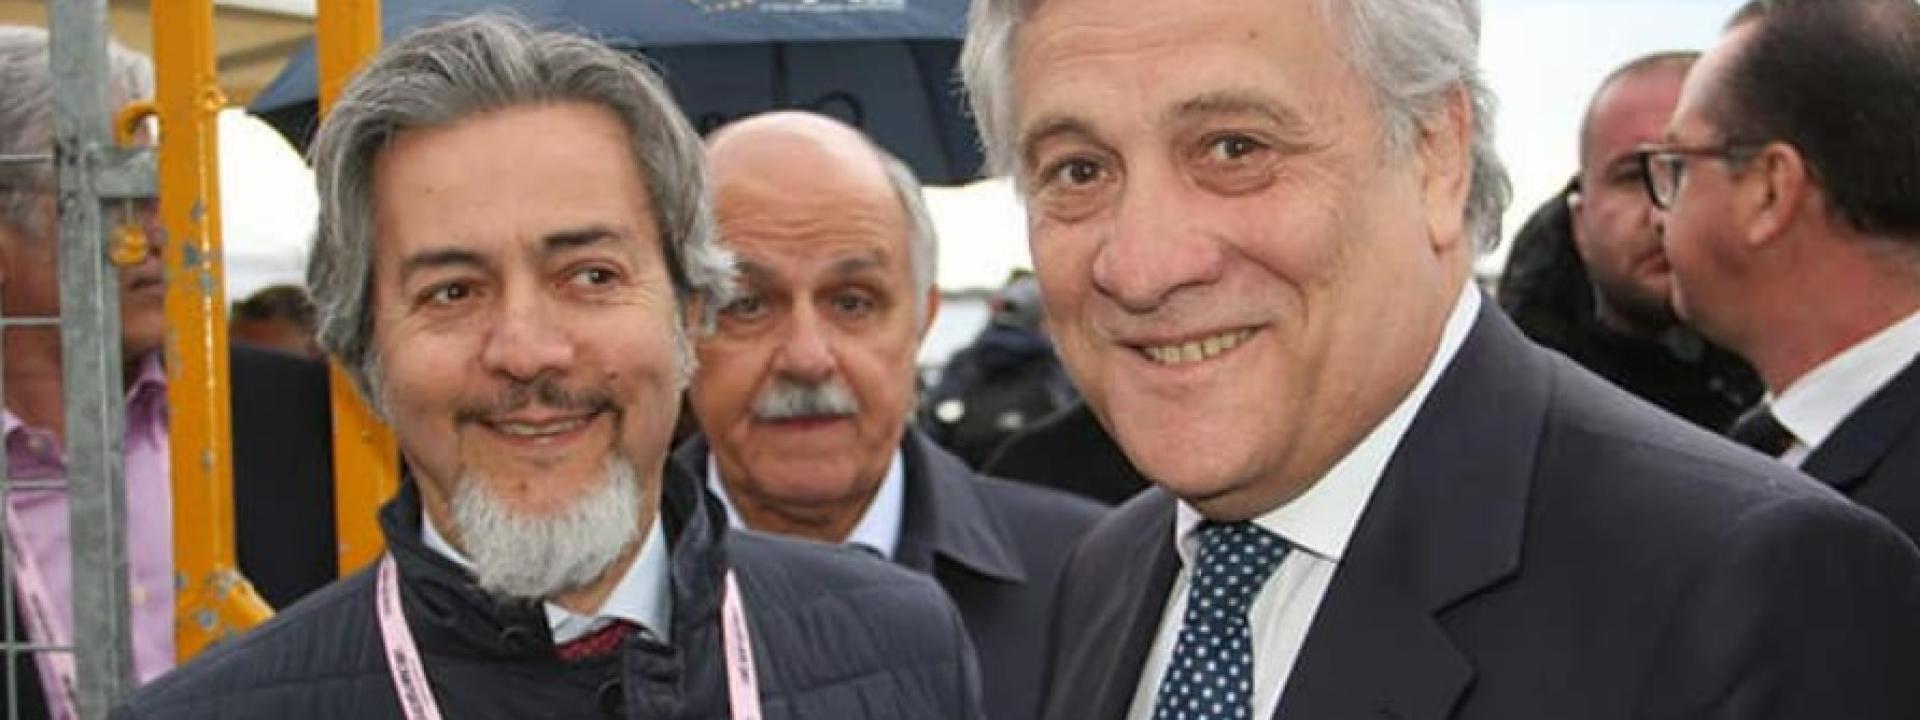 Marche - Antonio Tajani a Tolentino il 6 giugno per sostenere Silvia Luconi